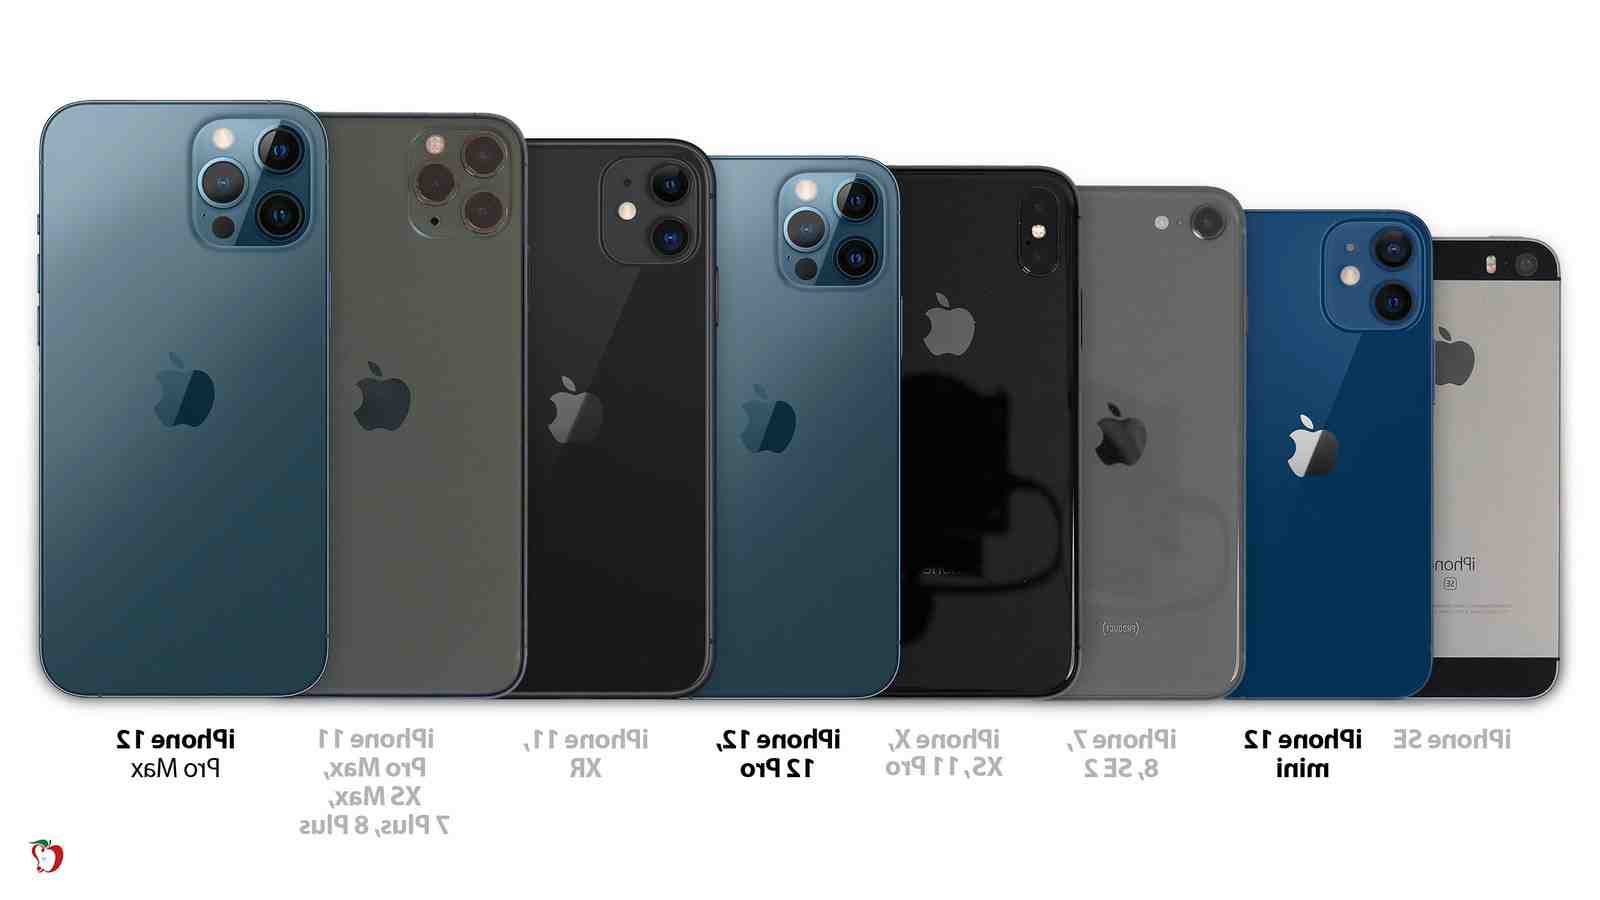 Quelle est la taille de l'écran de l'iphone 8 plus ?